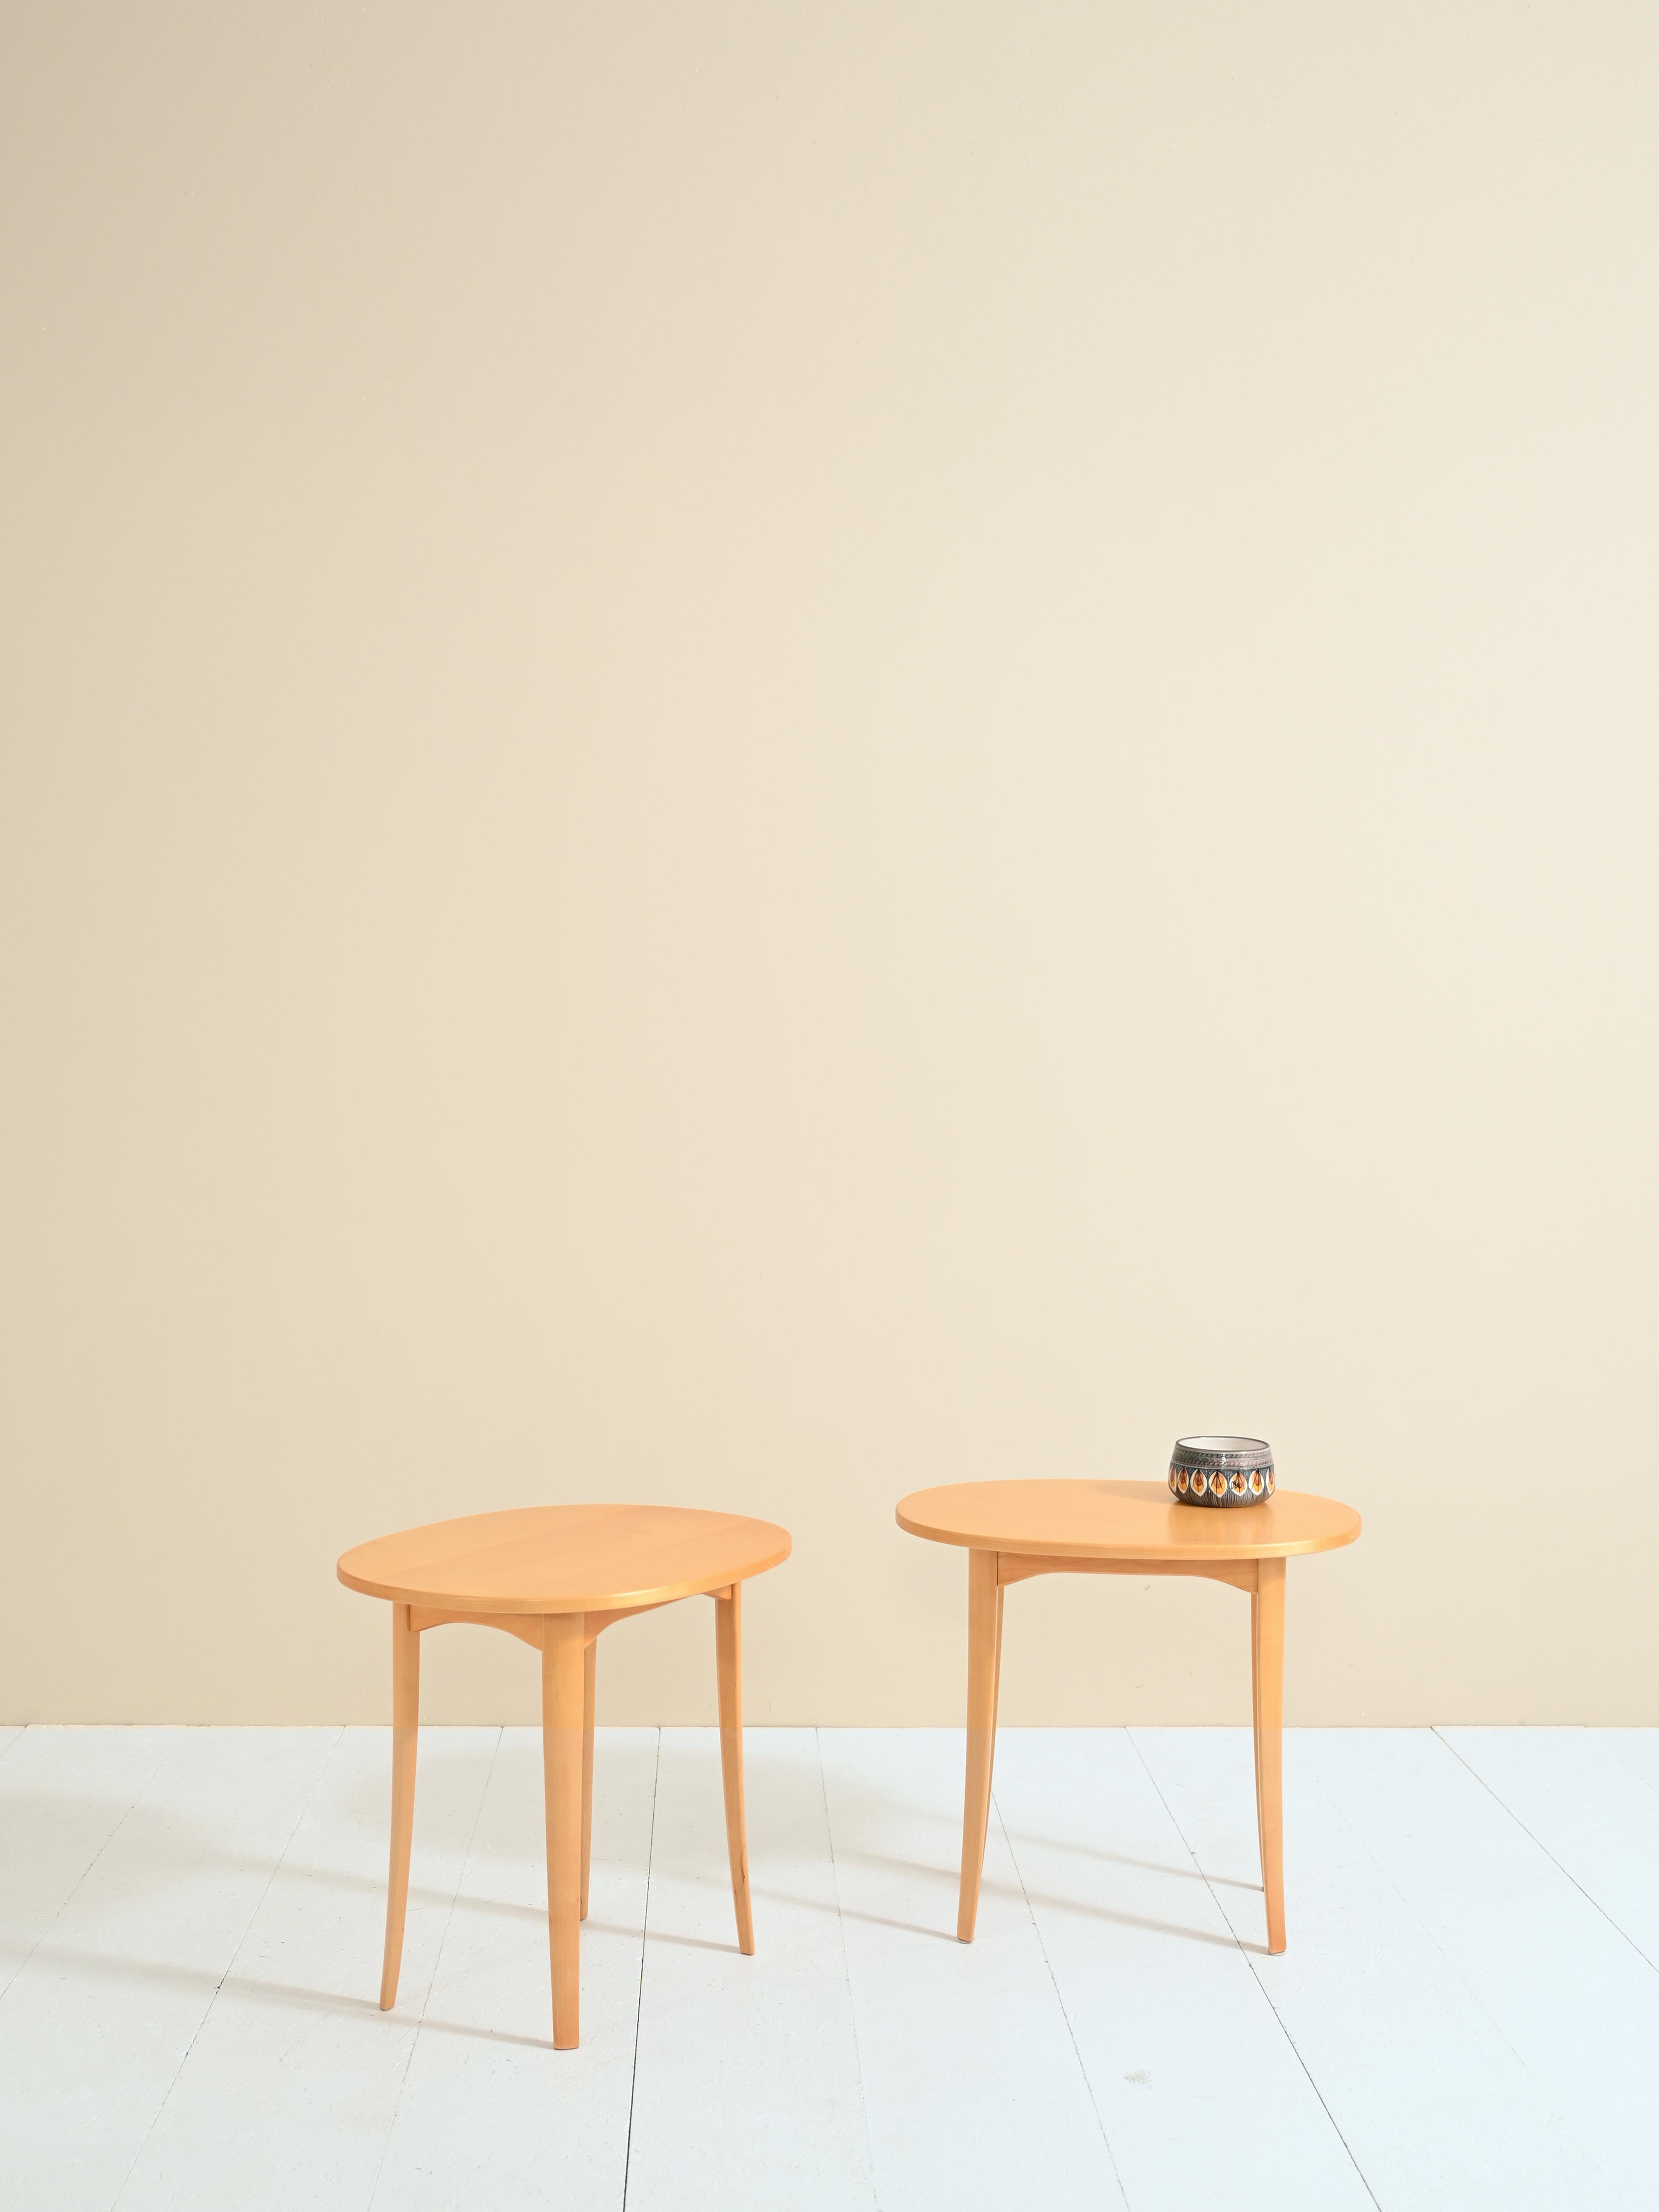 Ein Paar Nachttische aus Birkenholz, entworfen in den 1960er Jahren von Carl Malmsten, wie der Echtheitsstempel vermerkt.
Die weichen Linien der Platte und der Beine machen diese eleganten Nachttische zu zeitlos schönen Designstücken. 
 
Guter